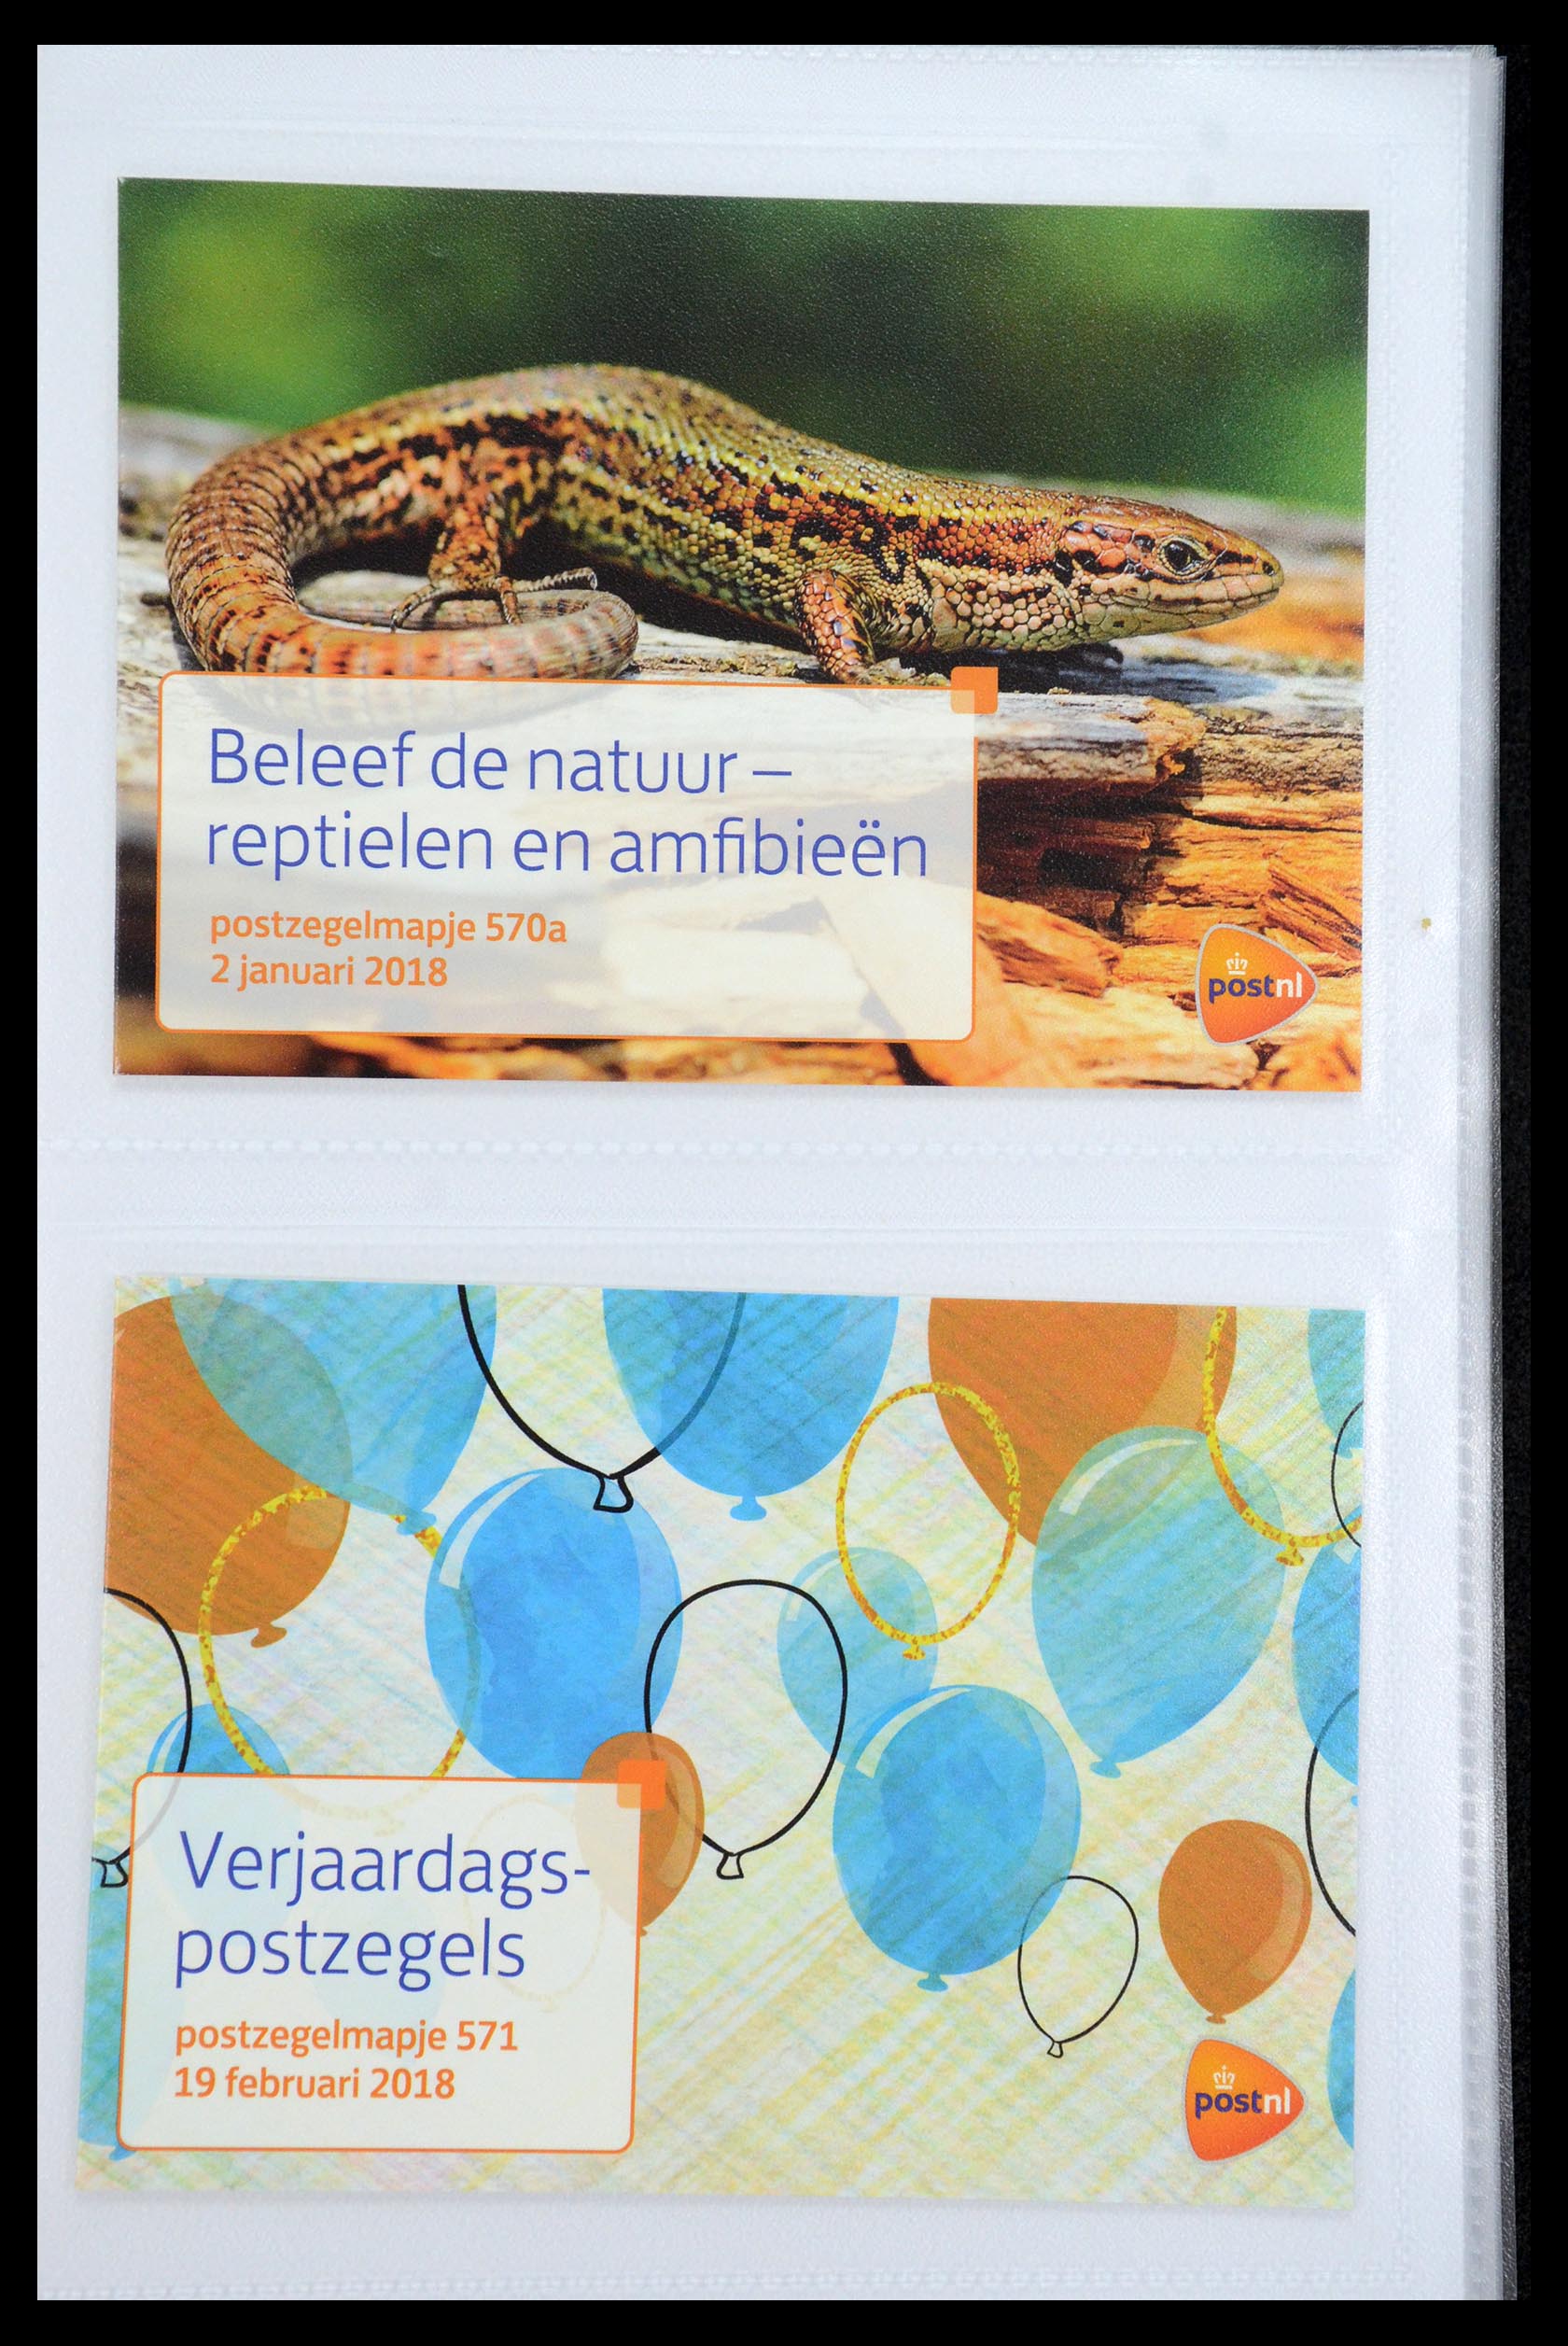 35947 343 - Stamp Collection 35947 Netherlands PTT presentation packs 1982-2019!